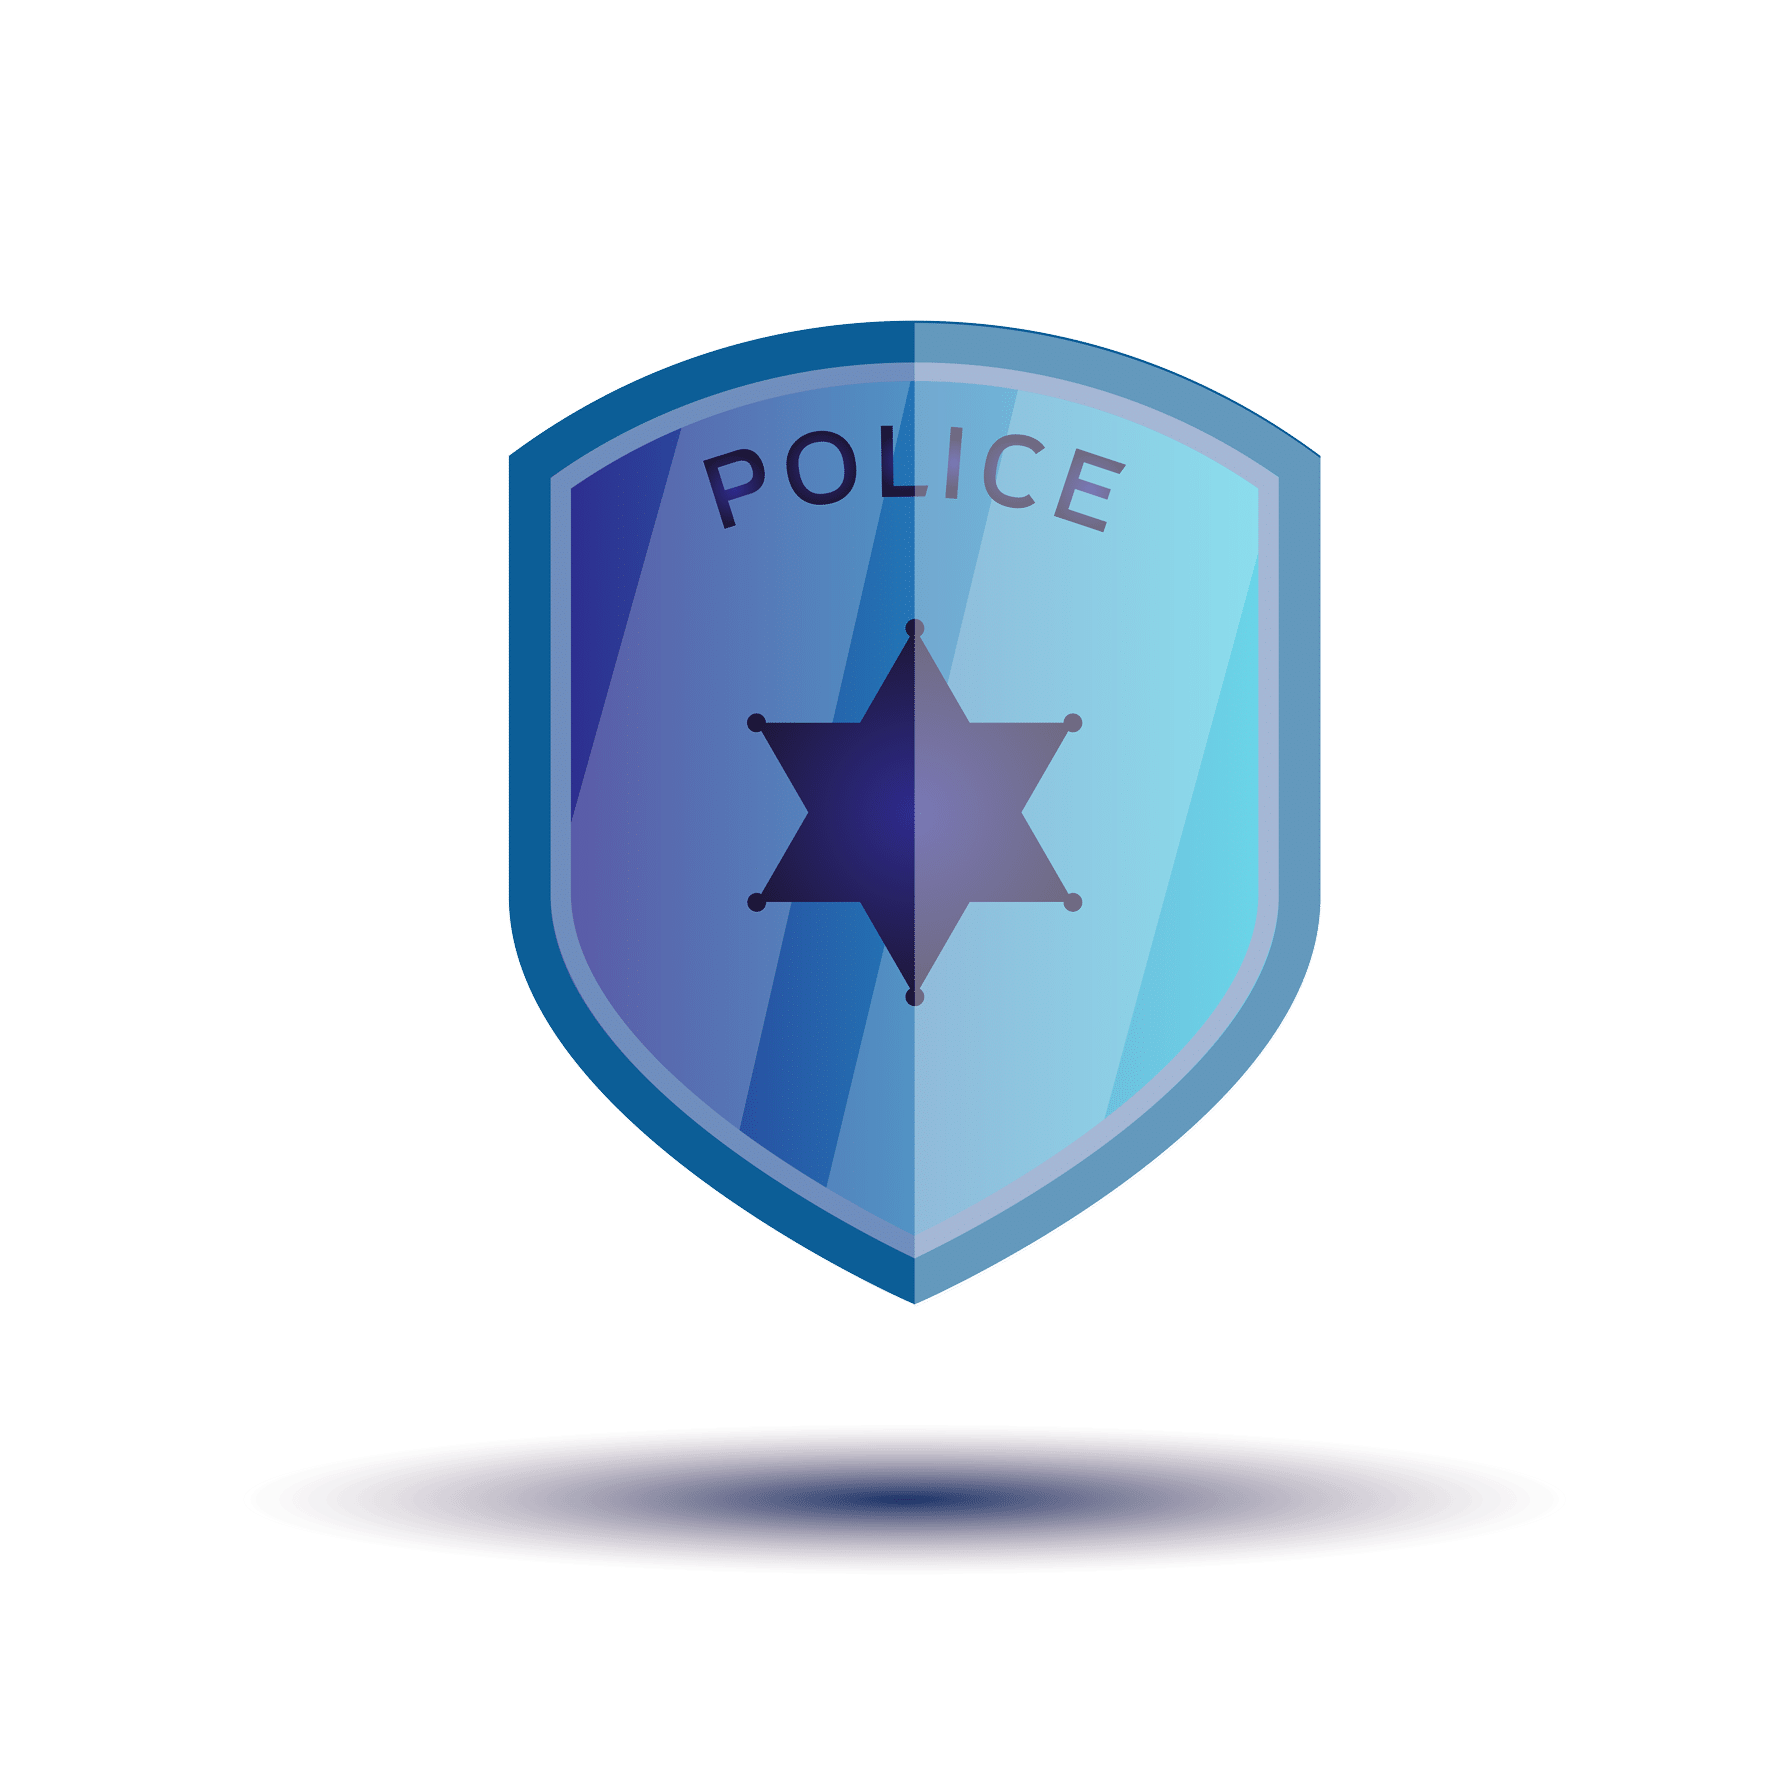 Cybercriminal_Domain data for law enforcement agencies